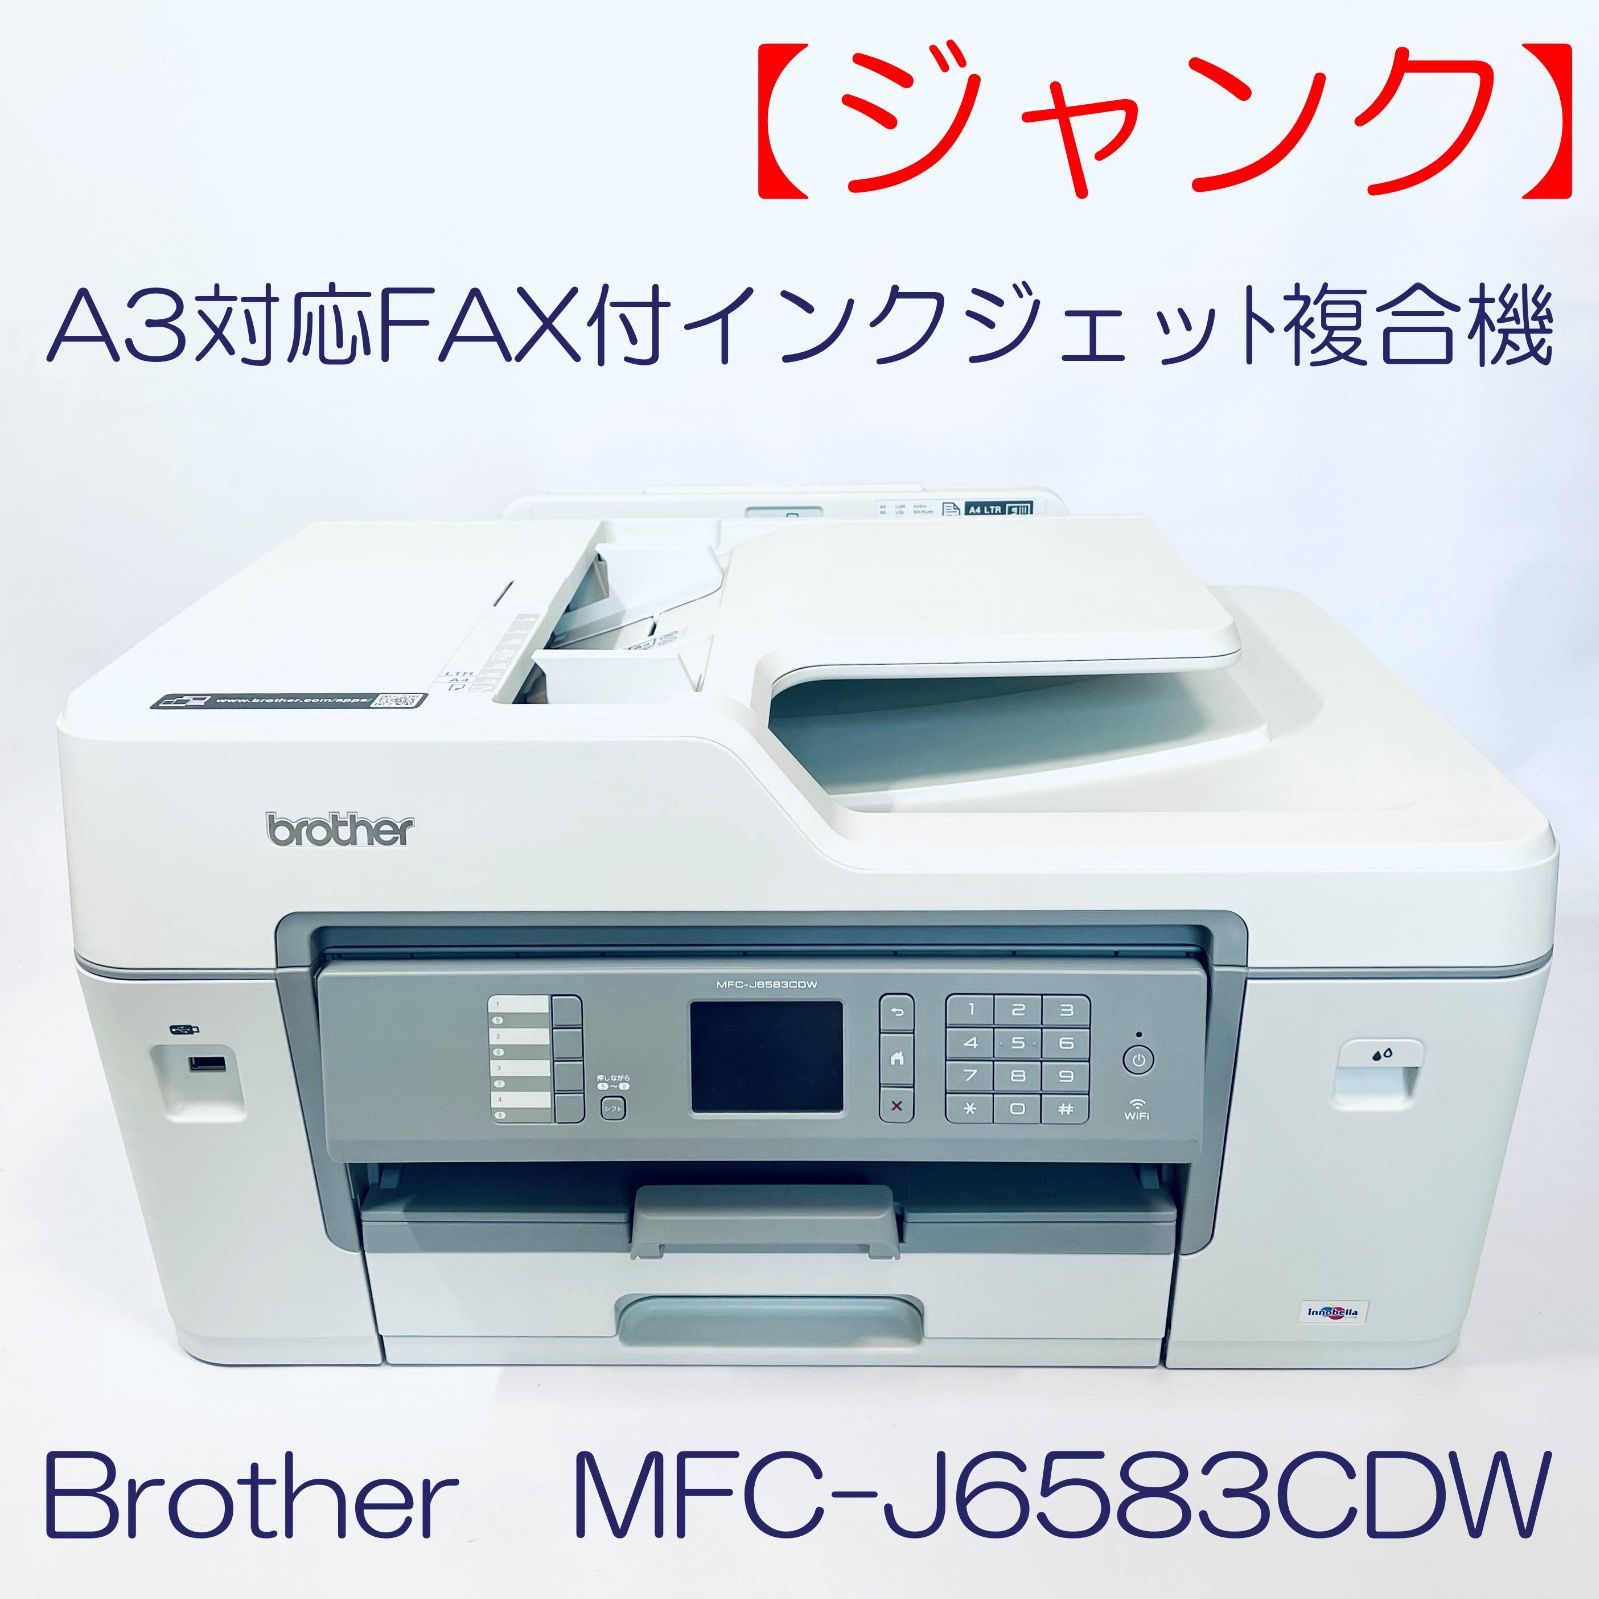 ジャンク】A3対応FAX付インクジェット複合機 Brothere MFC-J6583CDW 